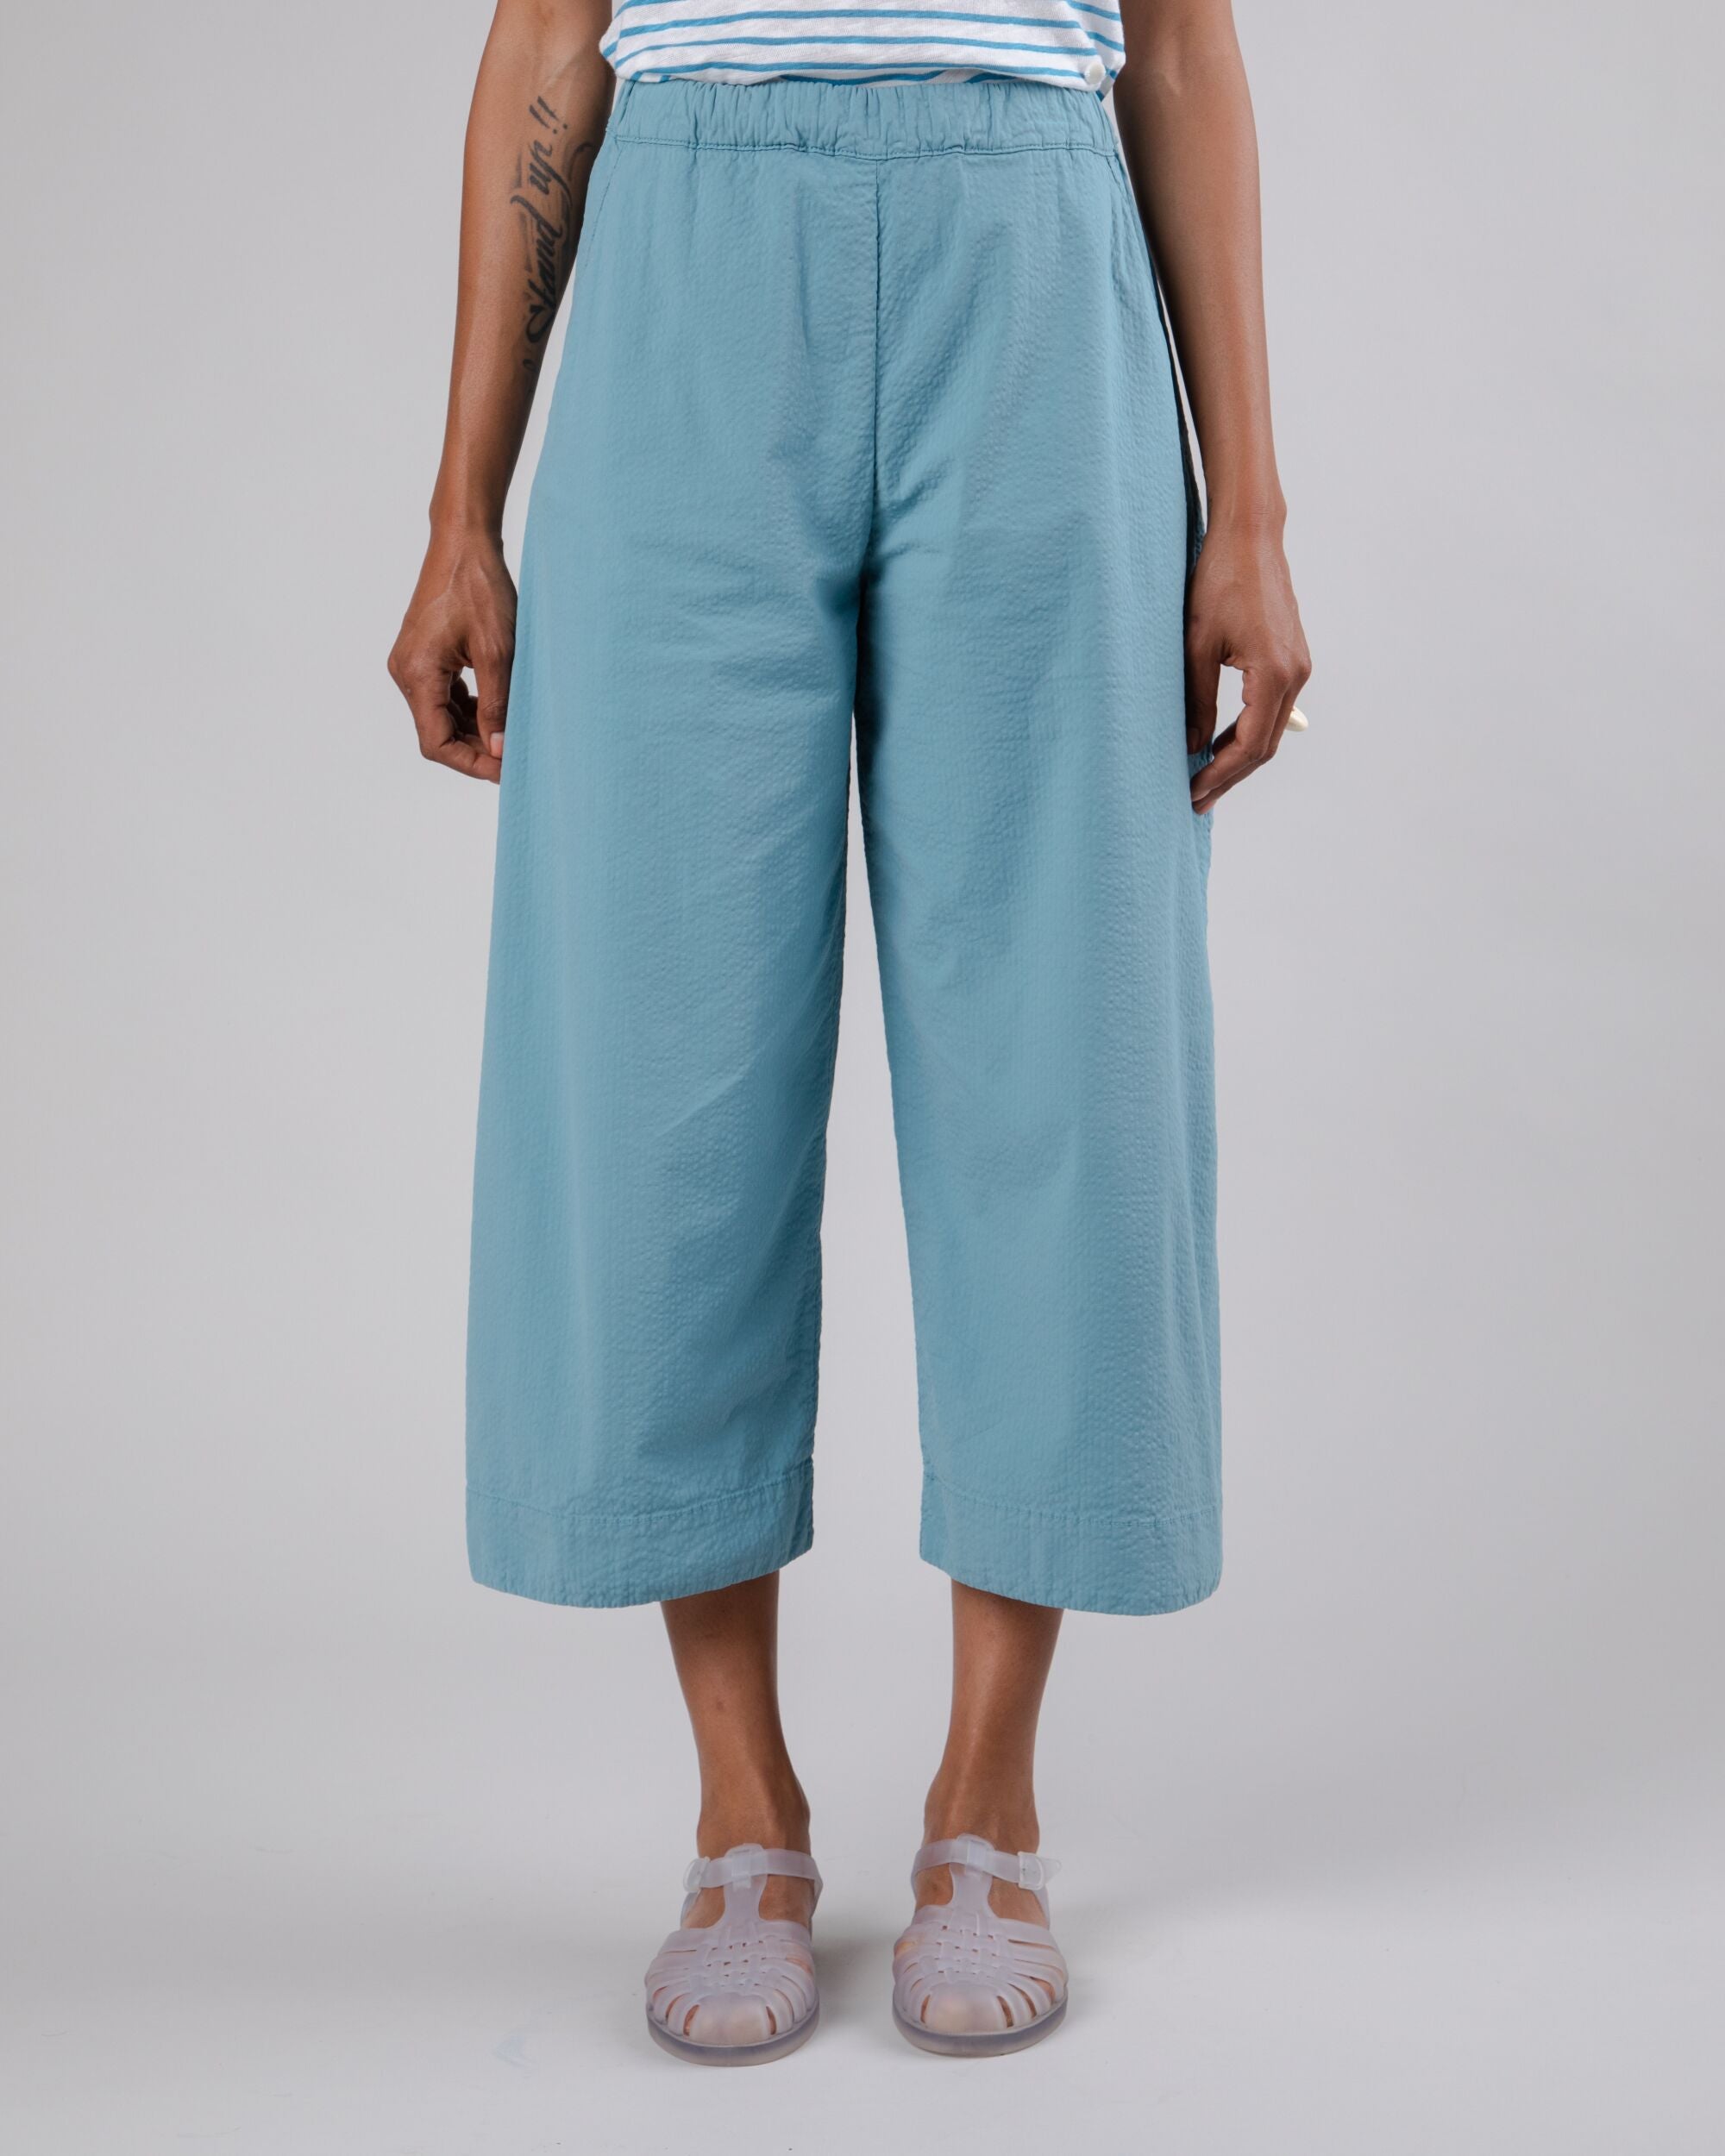 Pantalon Picnic oversize bleu océan en coton biologique par Brava Fabrics